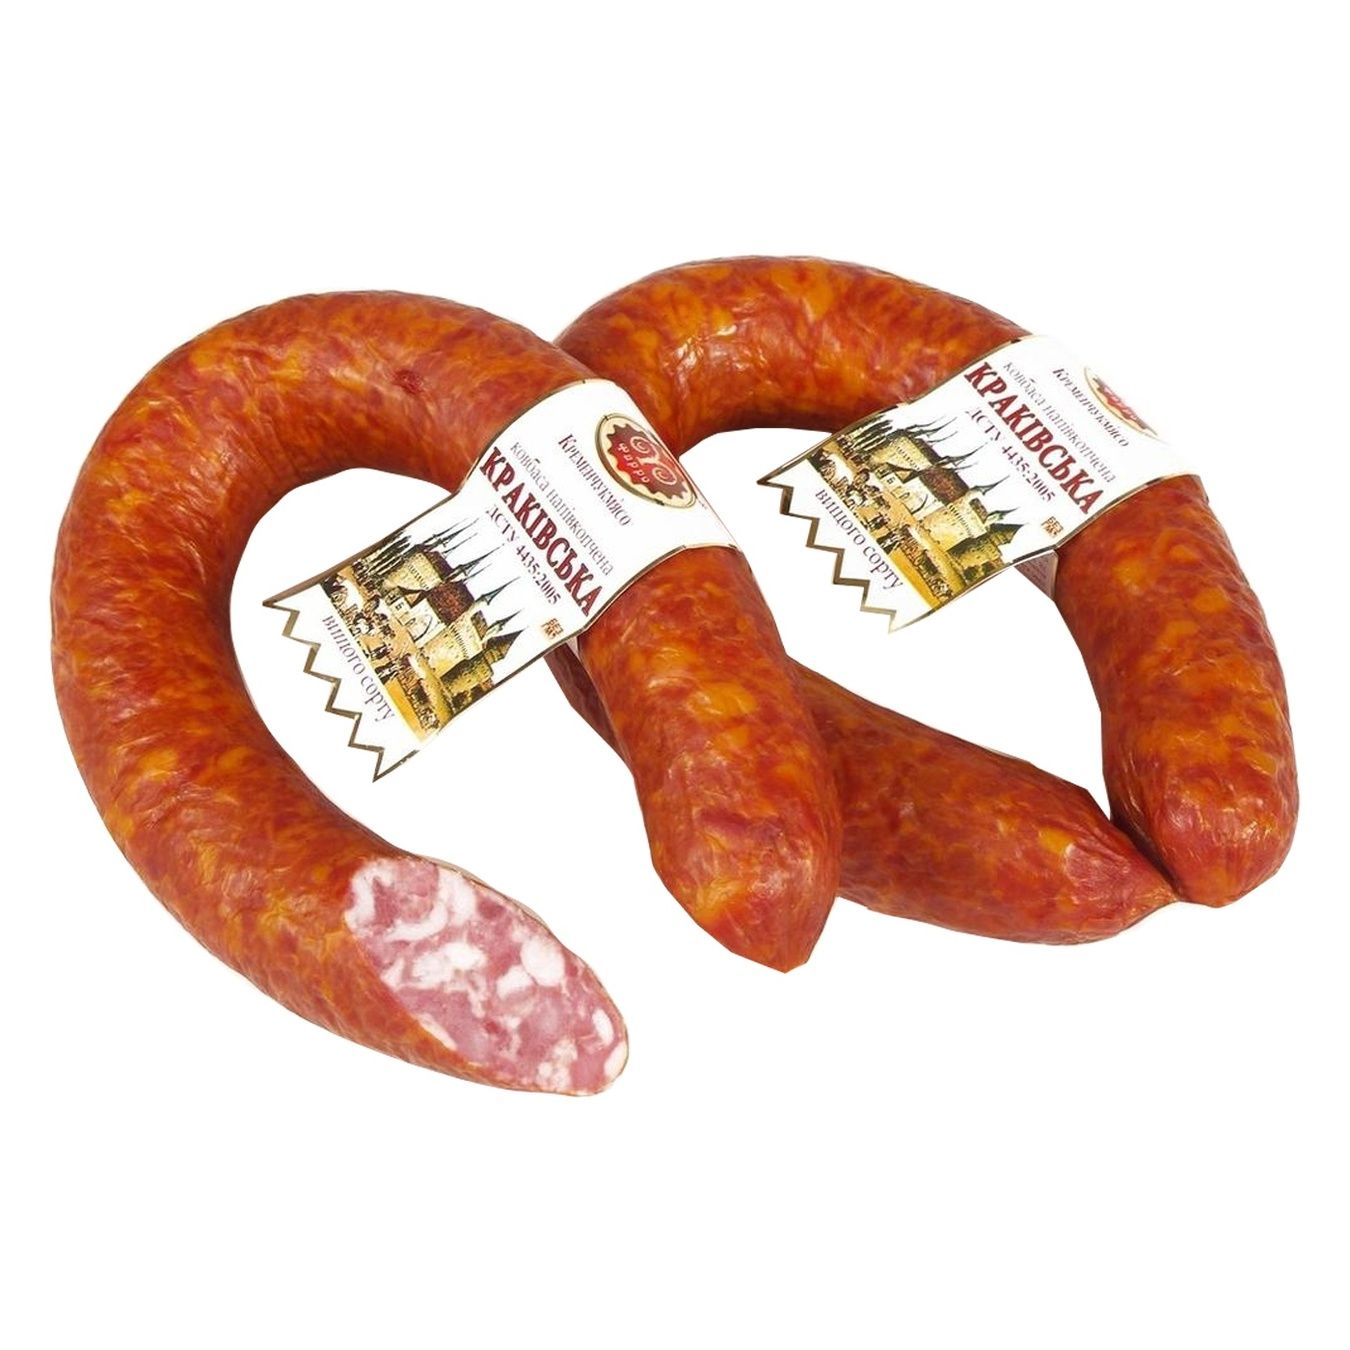 Farro Krakowskaya Semi-smoked Premium Sausage